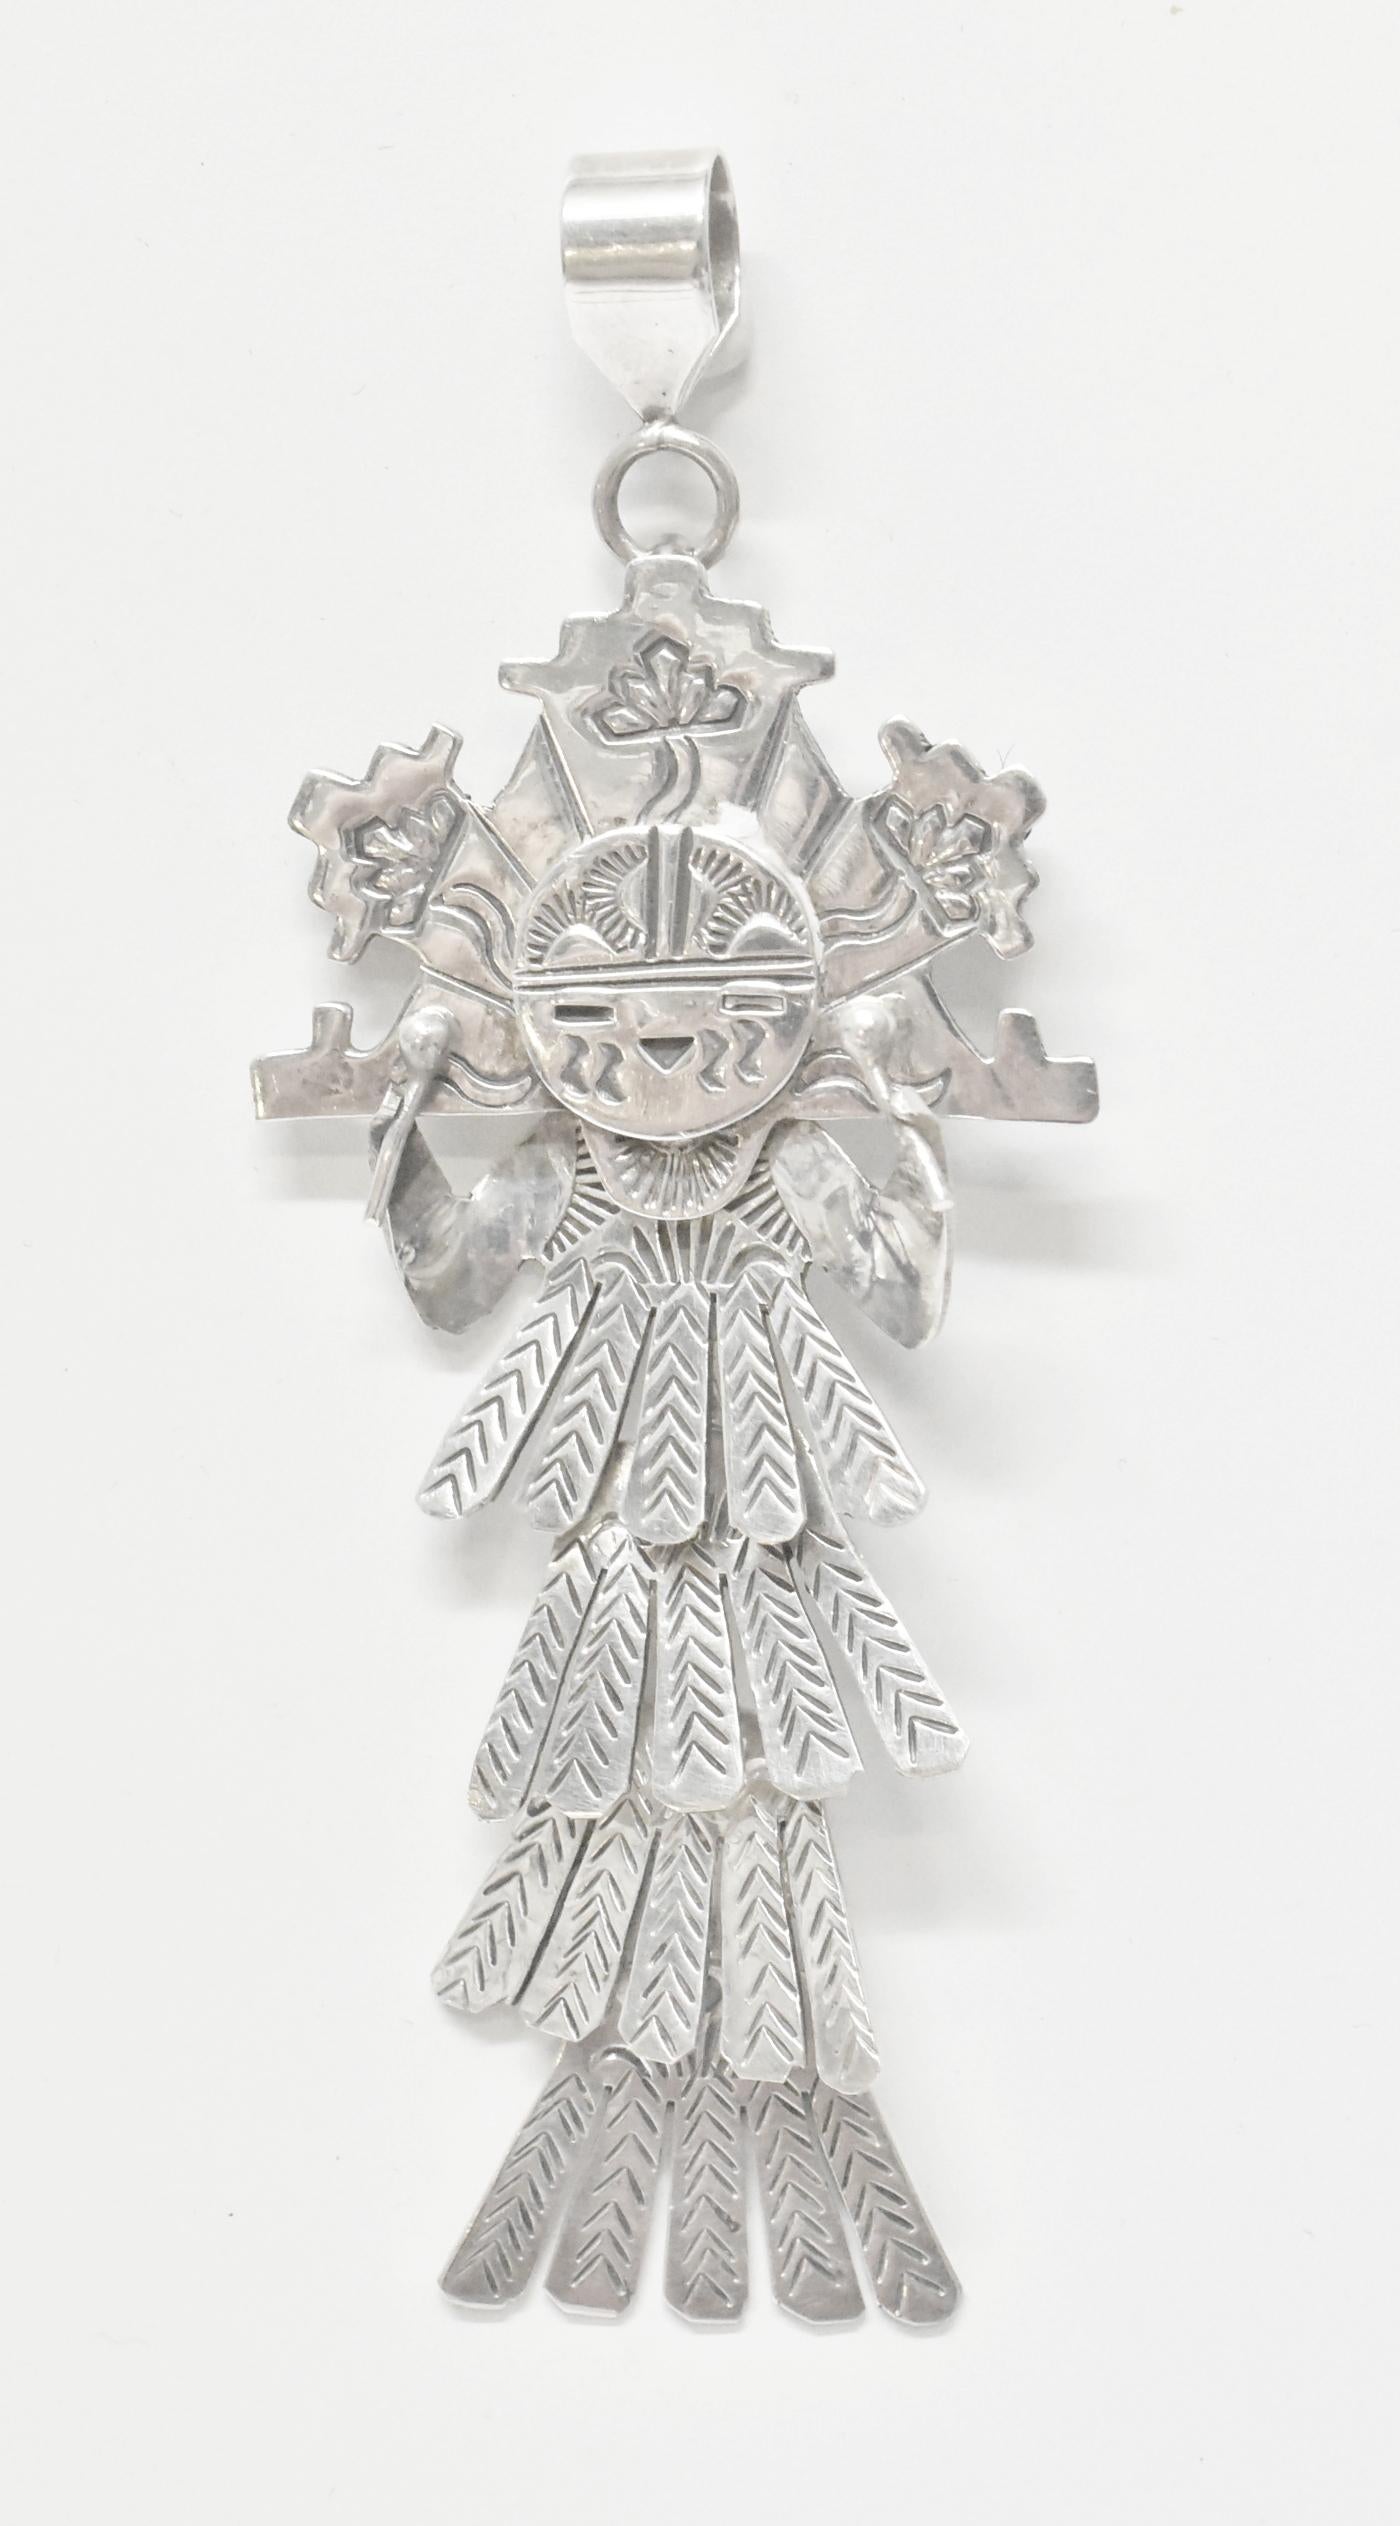 Amerikanischer Shalako-Kachina-Anhänger von Esther Wood. Esther Wood ist eine Navajo-Silberschmiedin und Juwelierin. Mehrere Werke von ihr wurden im Smithsonian ausgestellt. Dieses schöne Stück aus Sterlingsilber im Design der Shalako Kachina als